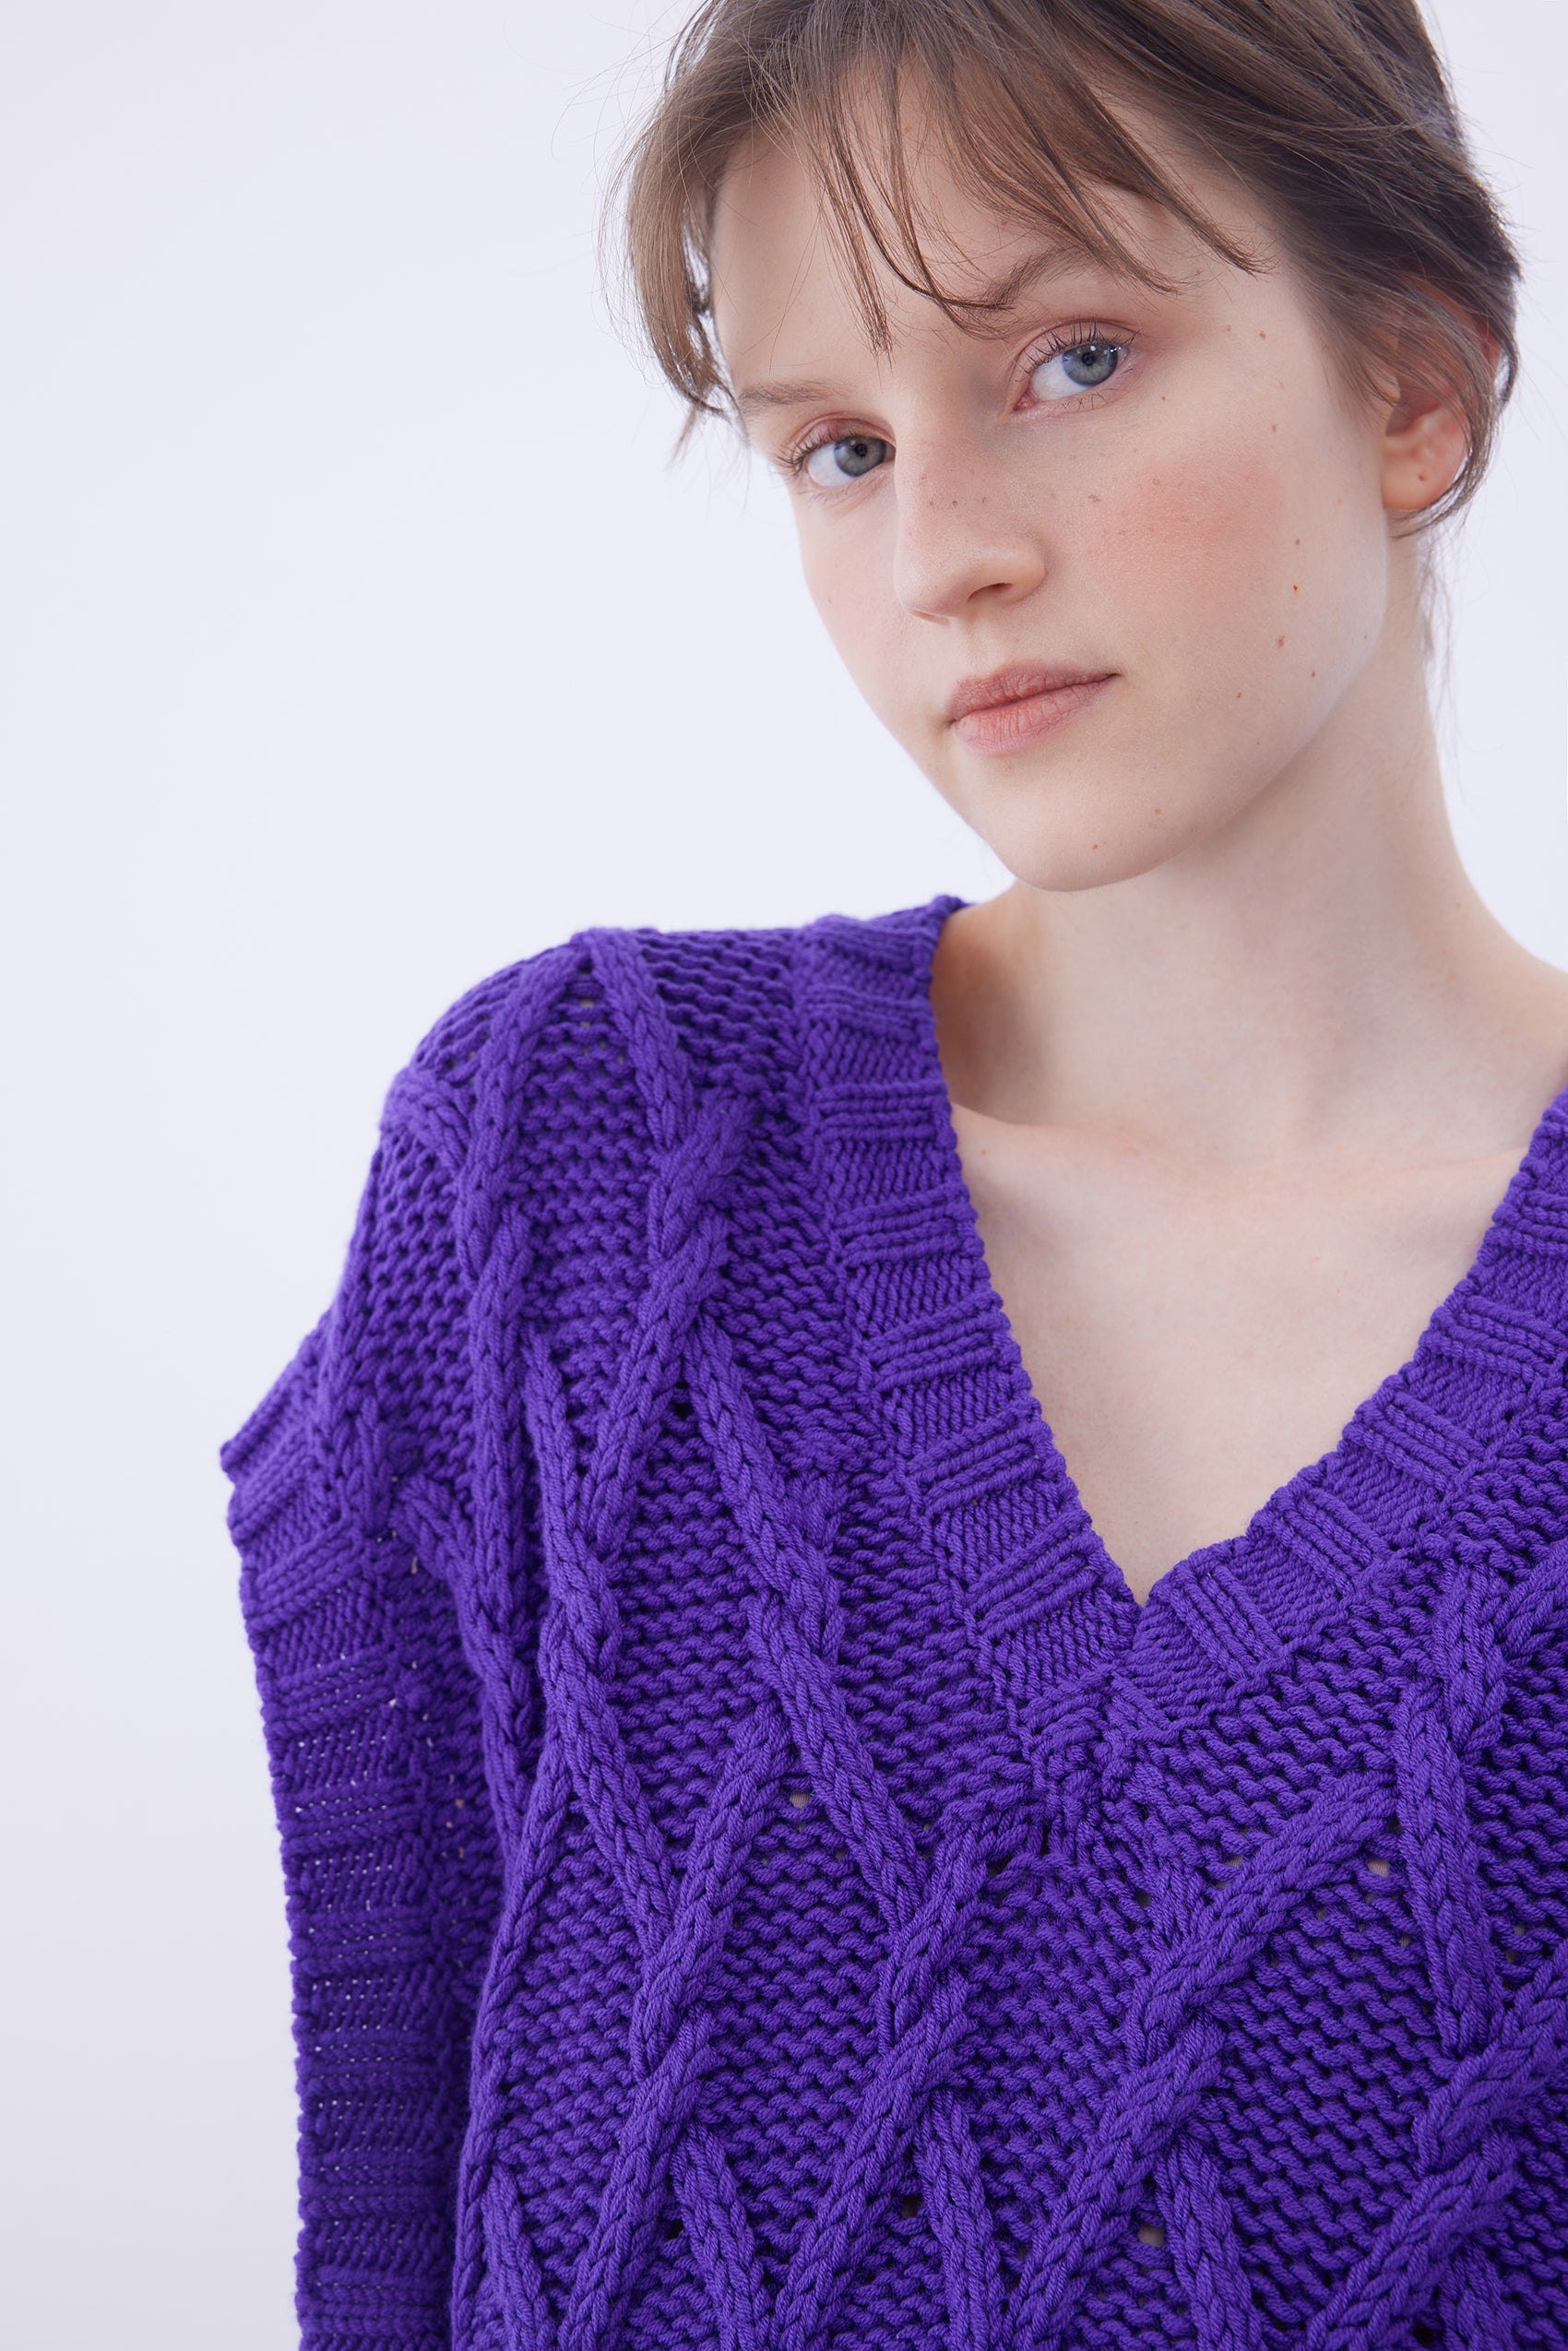 Cable knit vest